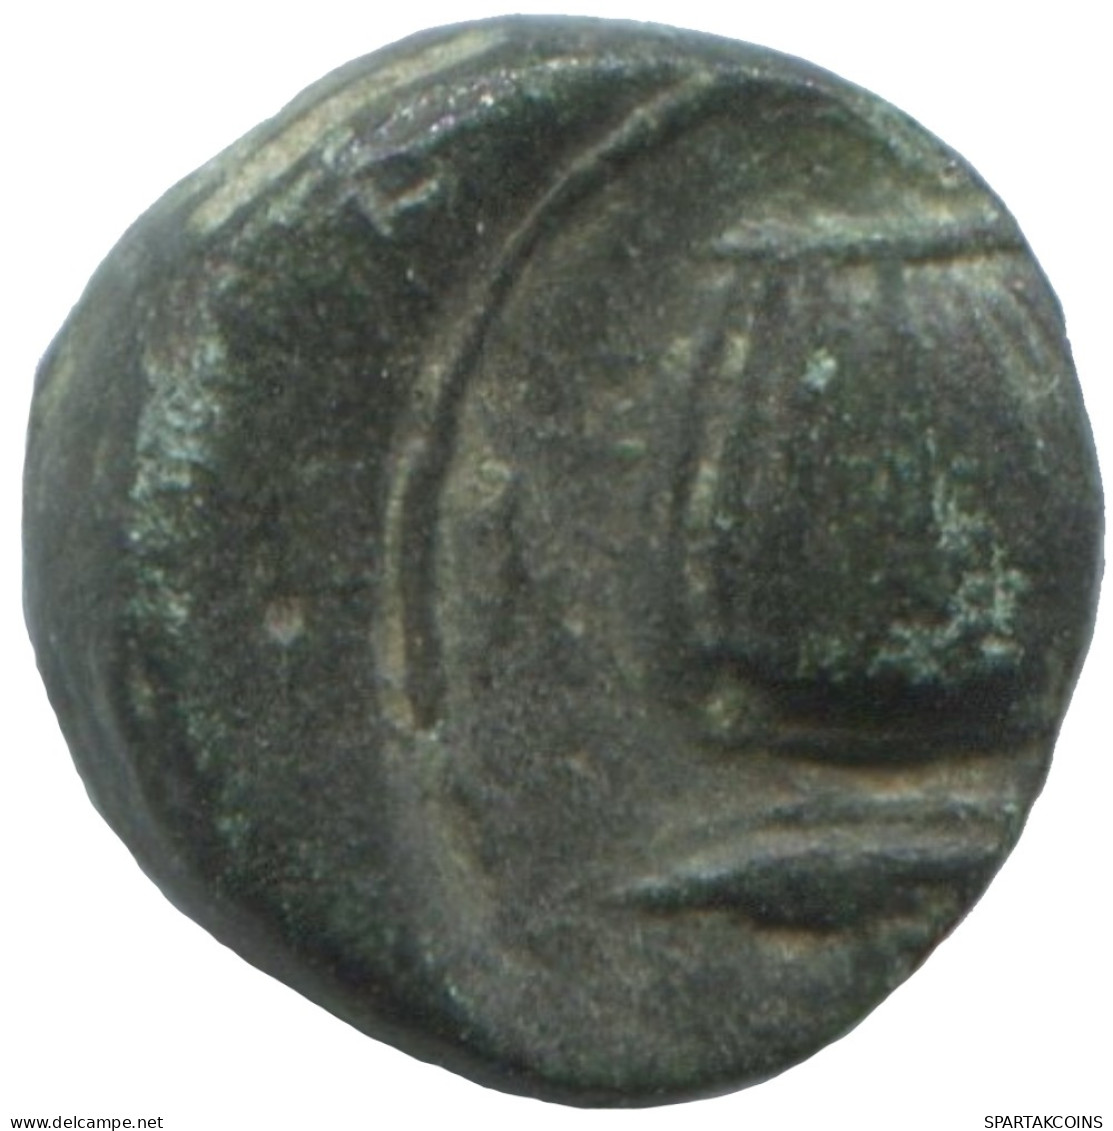 Ancient Antike Authentische Original GRIECHISCHE Münze 1.1g/10mm #SAV1254.11.D.A - Griechische Münzen